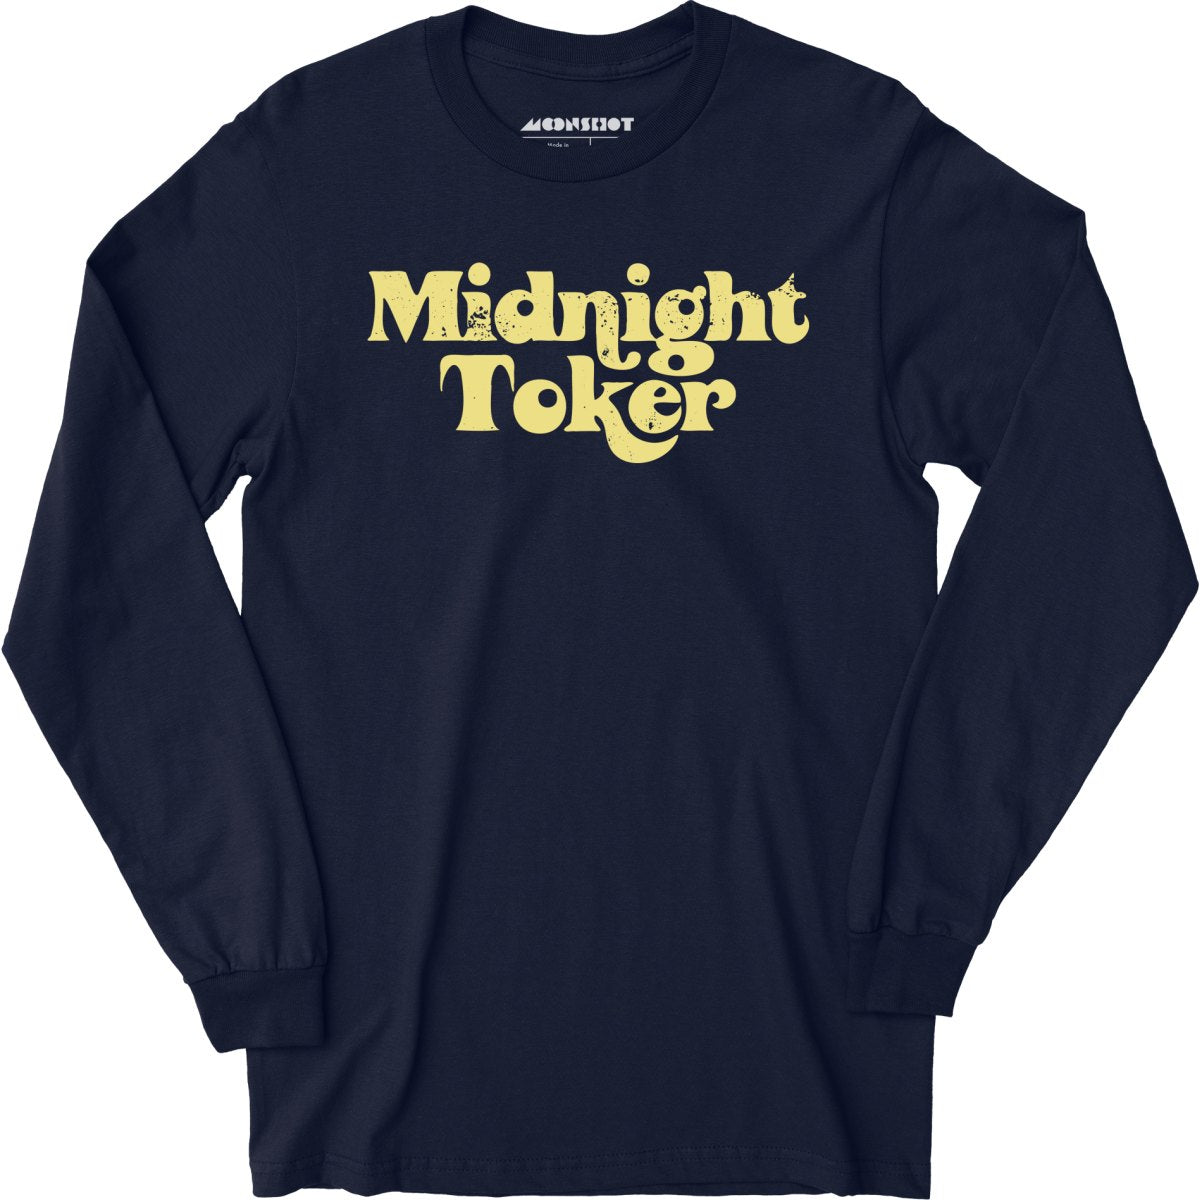 Midnight Toker - Long Sleeve T-Shirt